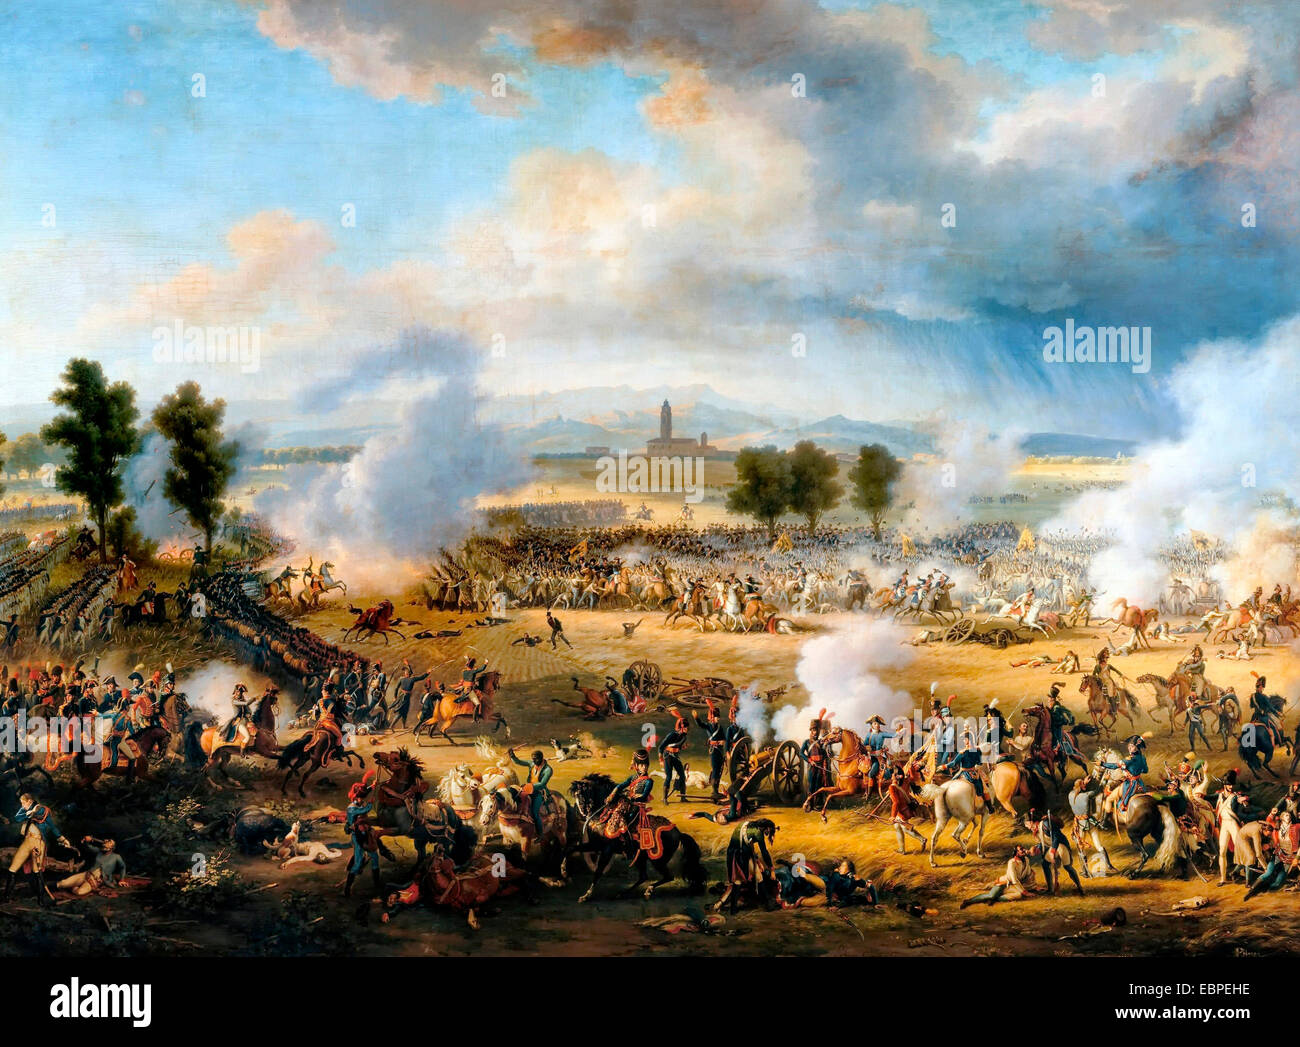 Die Schlacht von Marengo wurde am 14. Juni 1800 zwischen französischen Truppen unter Napoleon Bonaparte und österreichische Truppen in der Nähe der Stadt Alessandria, Piemont, Italien gekämpft. Bataille de Marengo, 1802 Louis-François Lejeune Stockfoto